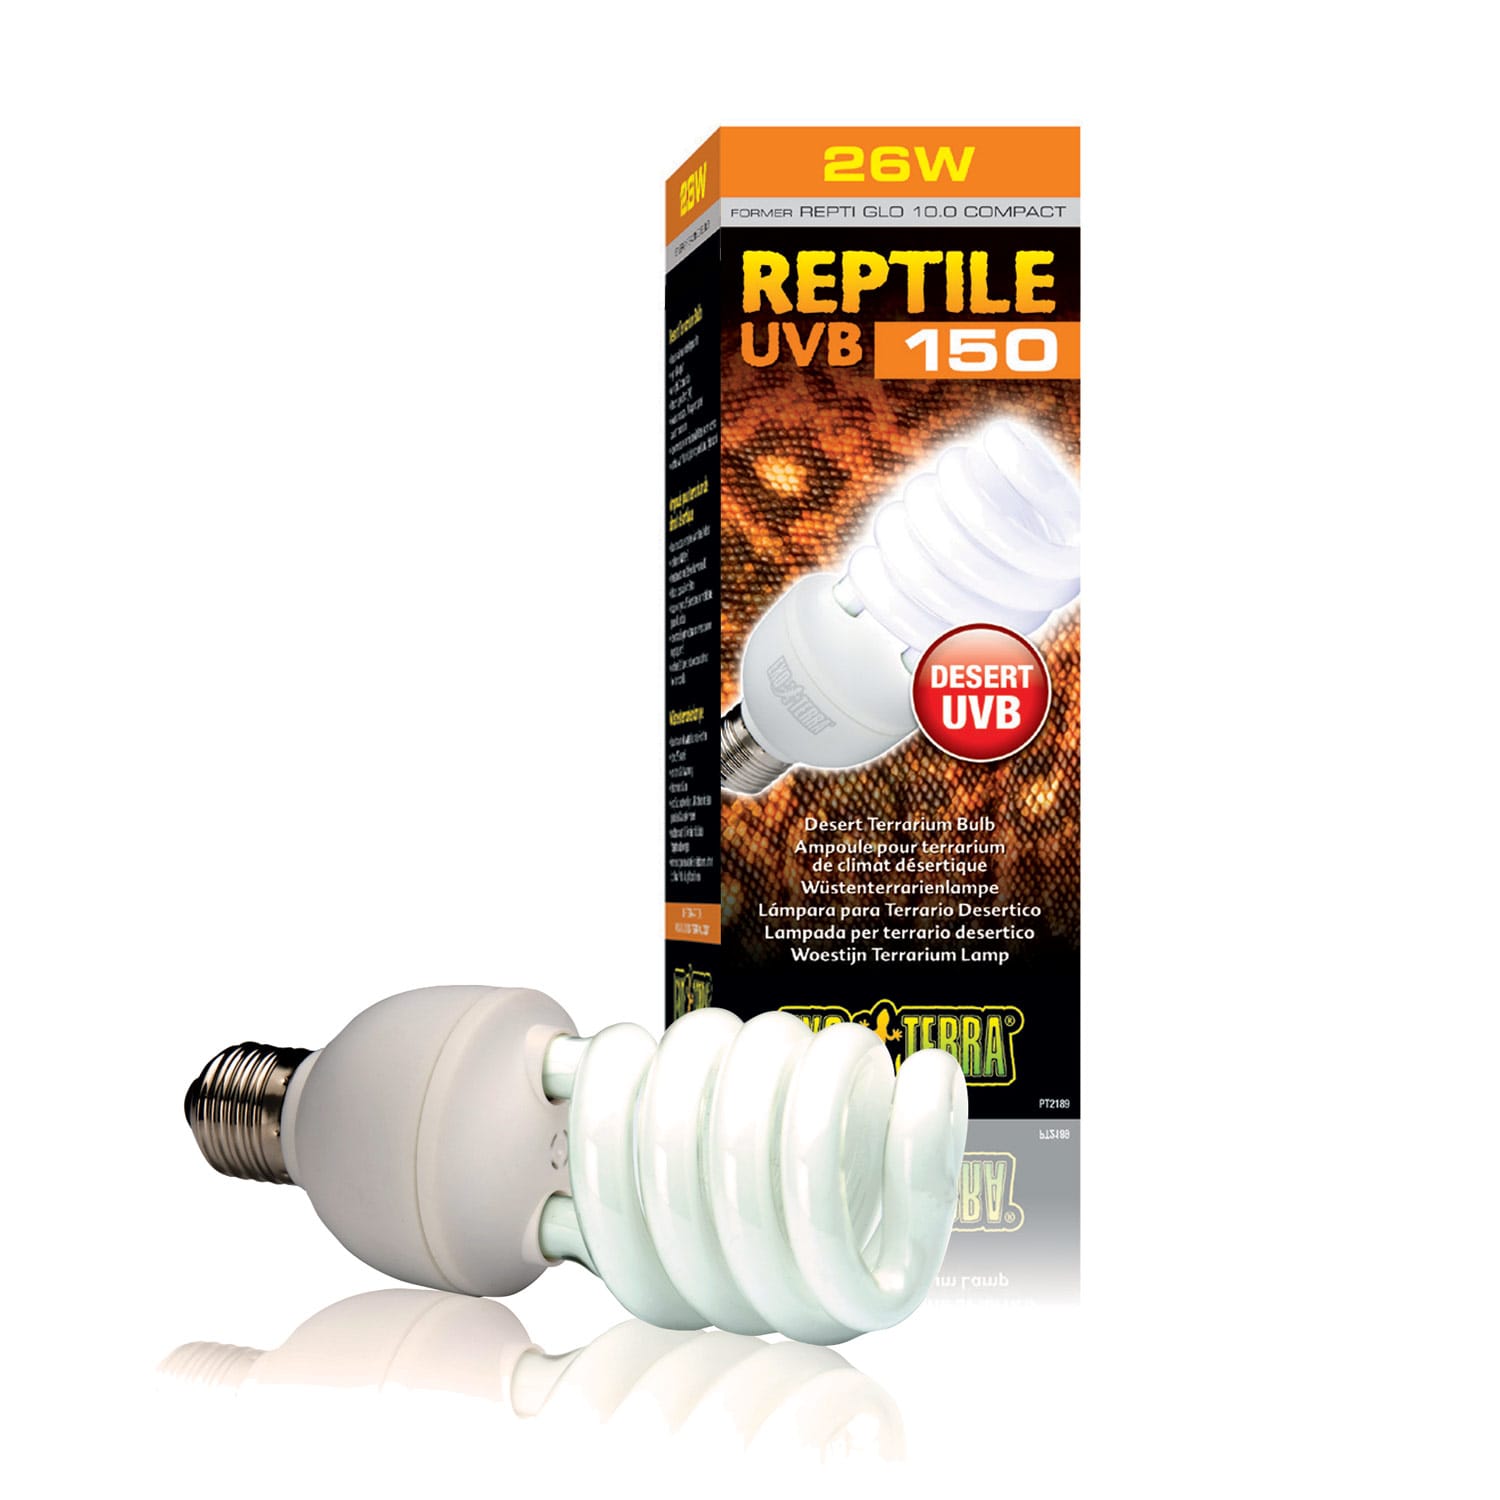 UVB Reptile Light UVB Light 100W UVB Bulb Turtle Light Flat-Faced Design Light for Amphibians for Lizard Reptiles 